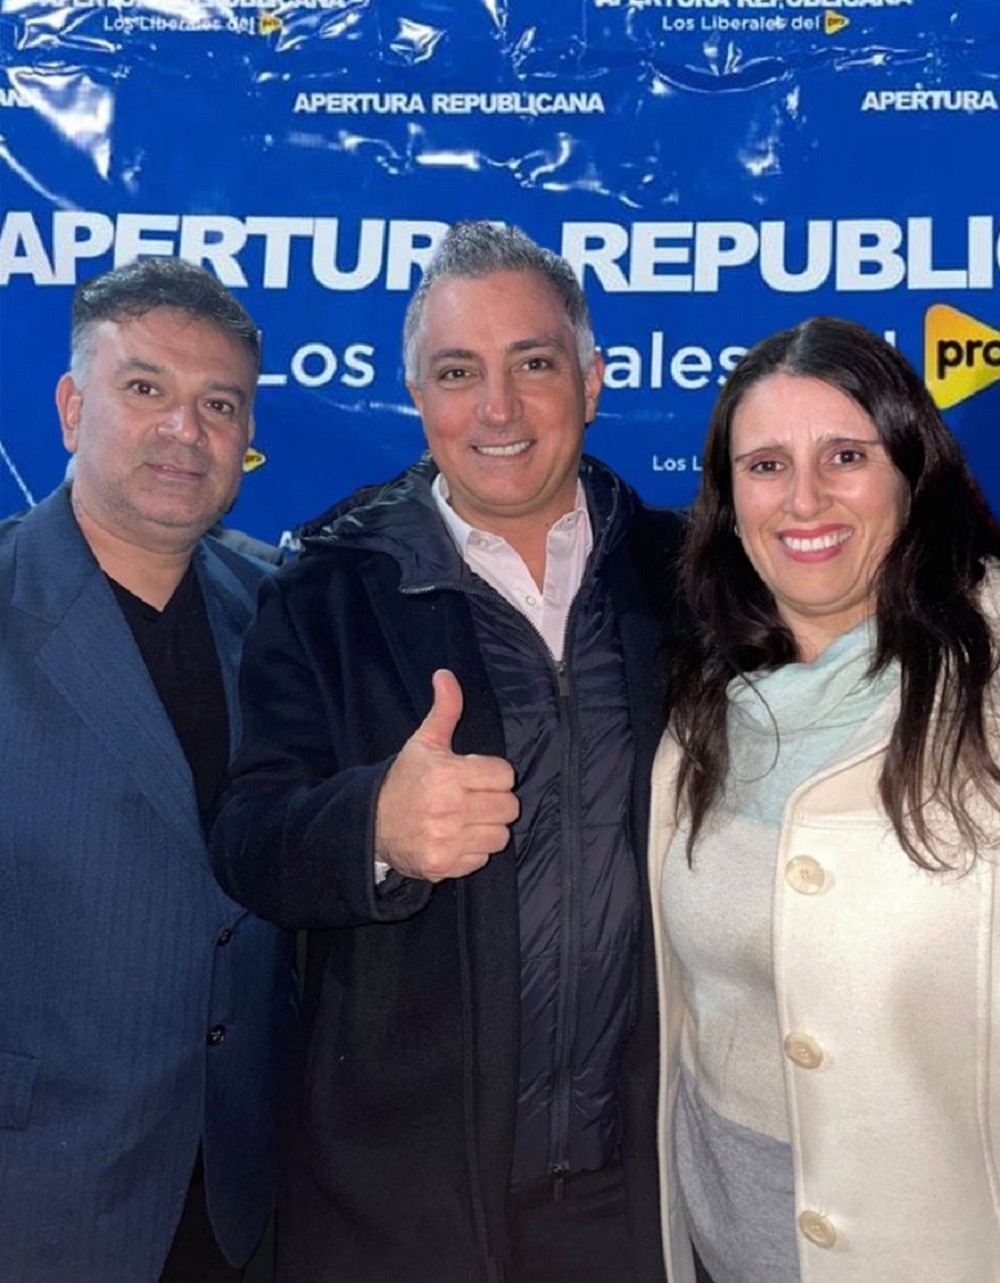 Andrea Coronel participó del lanzamiento provincial de Apertura Republicana